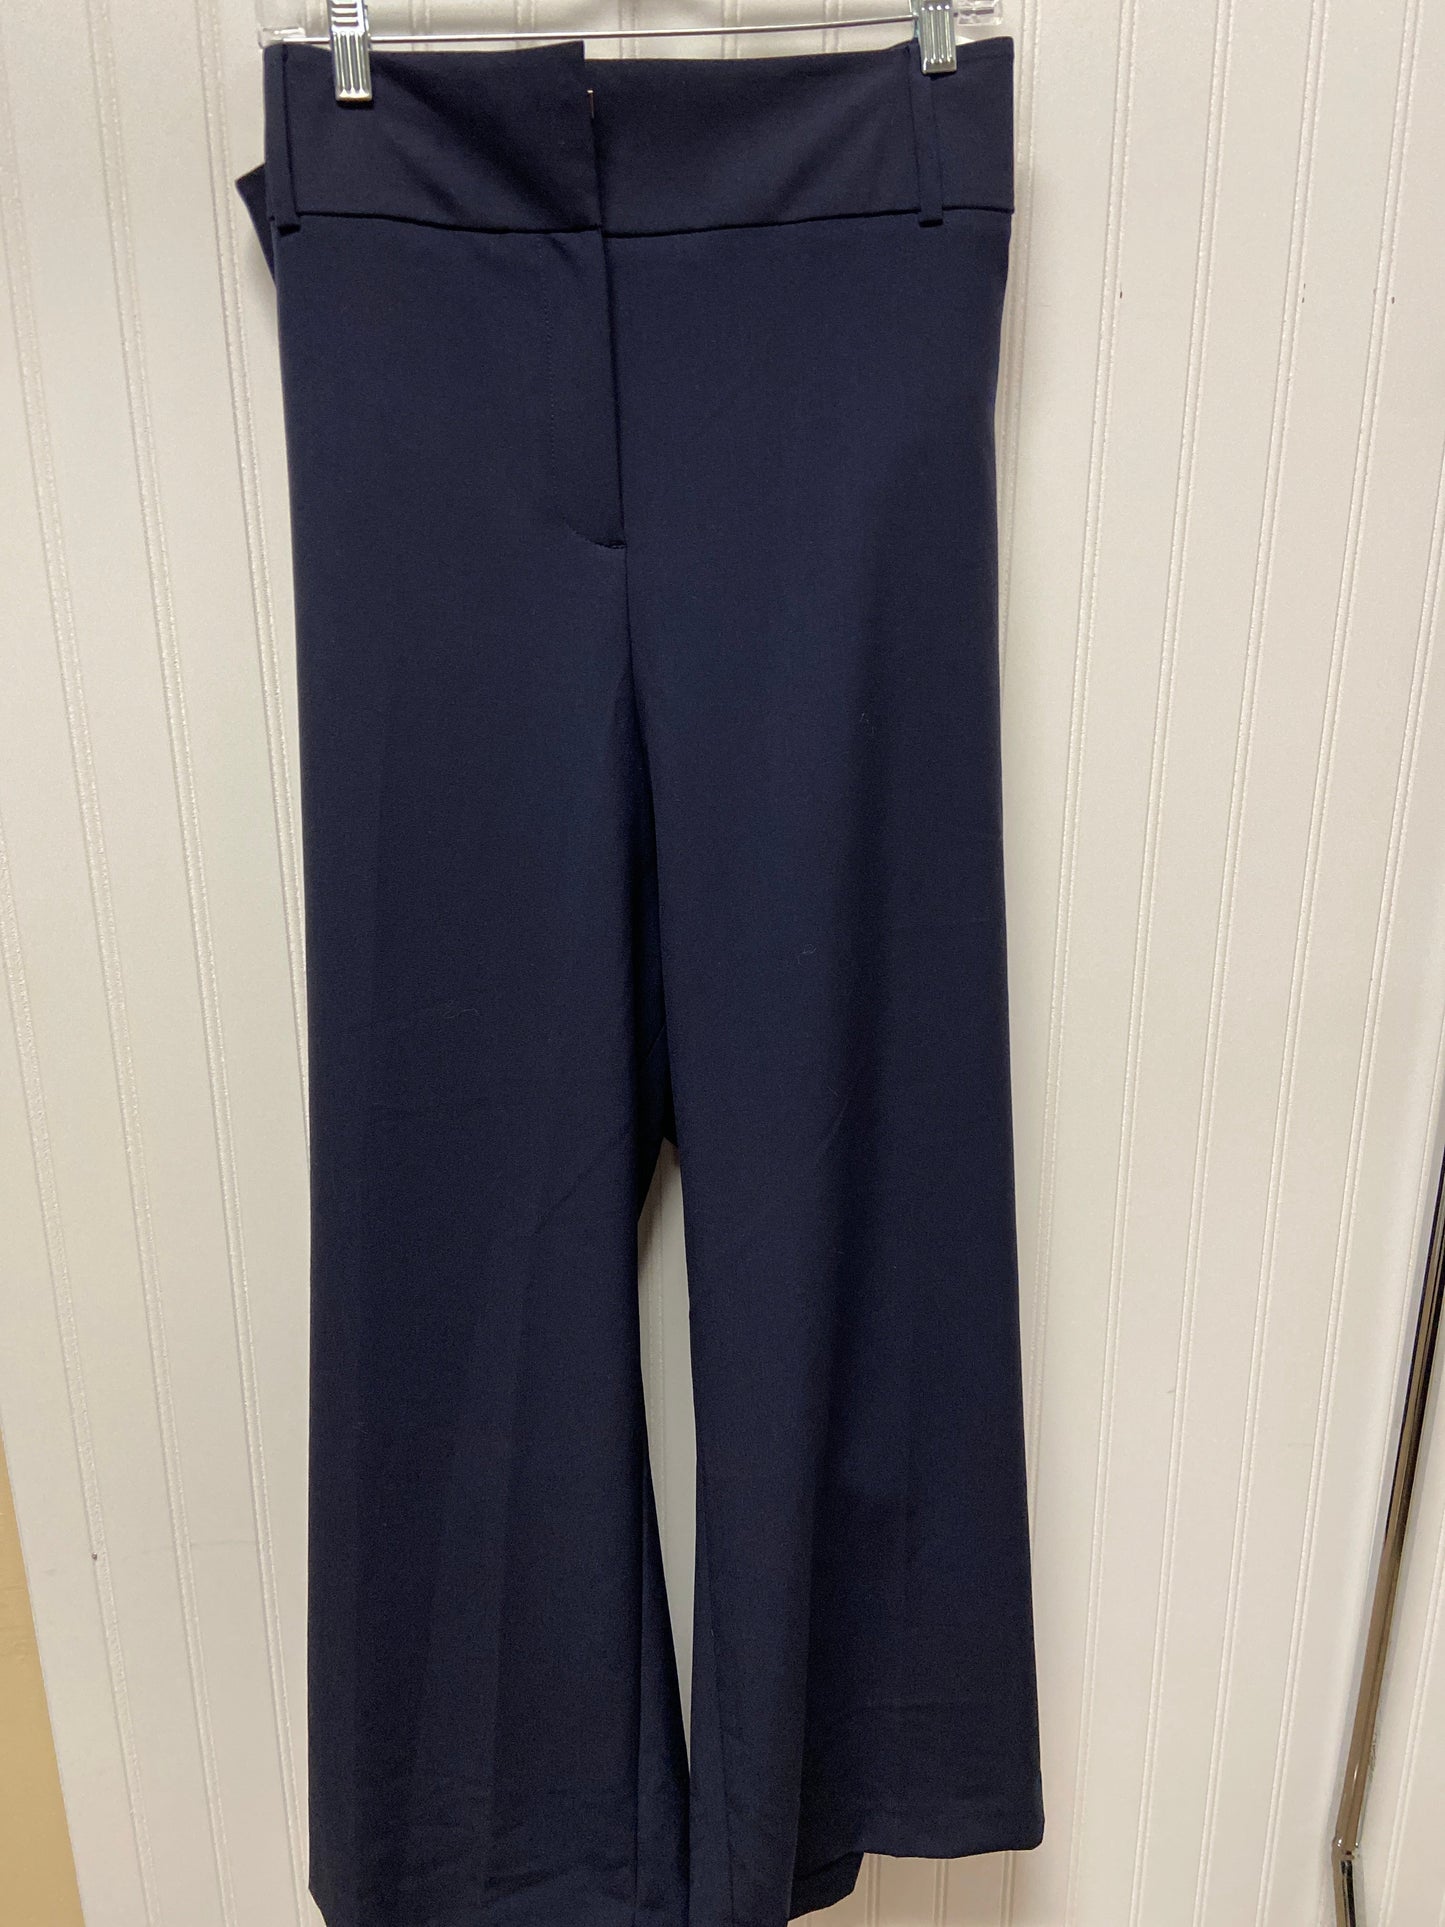 Navy Pants Dress Lane Bryant, Size 28